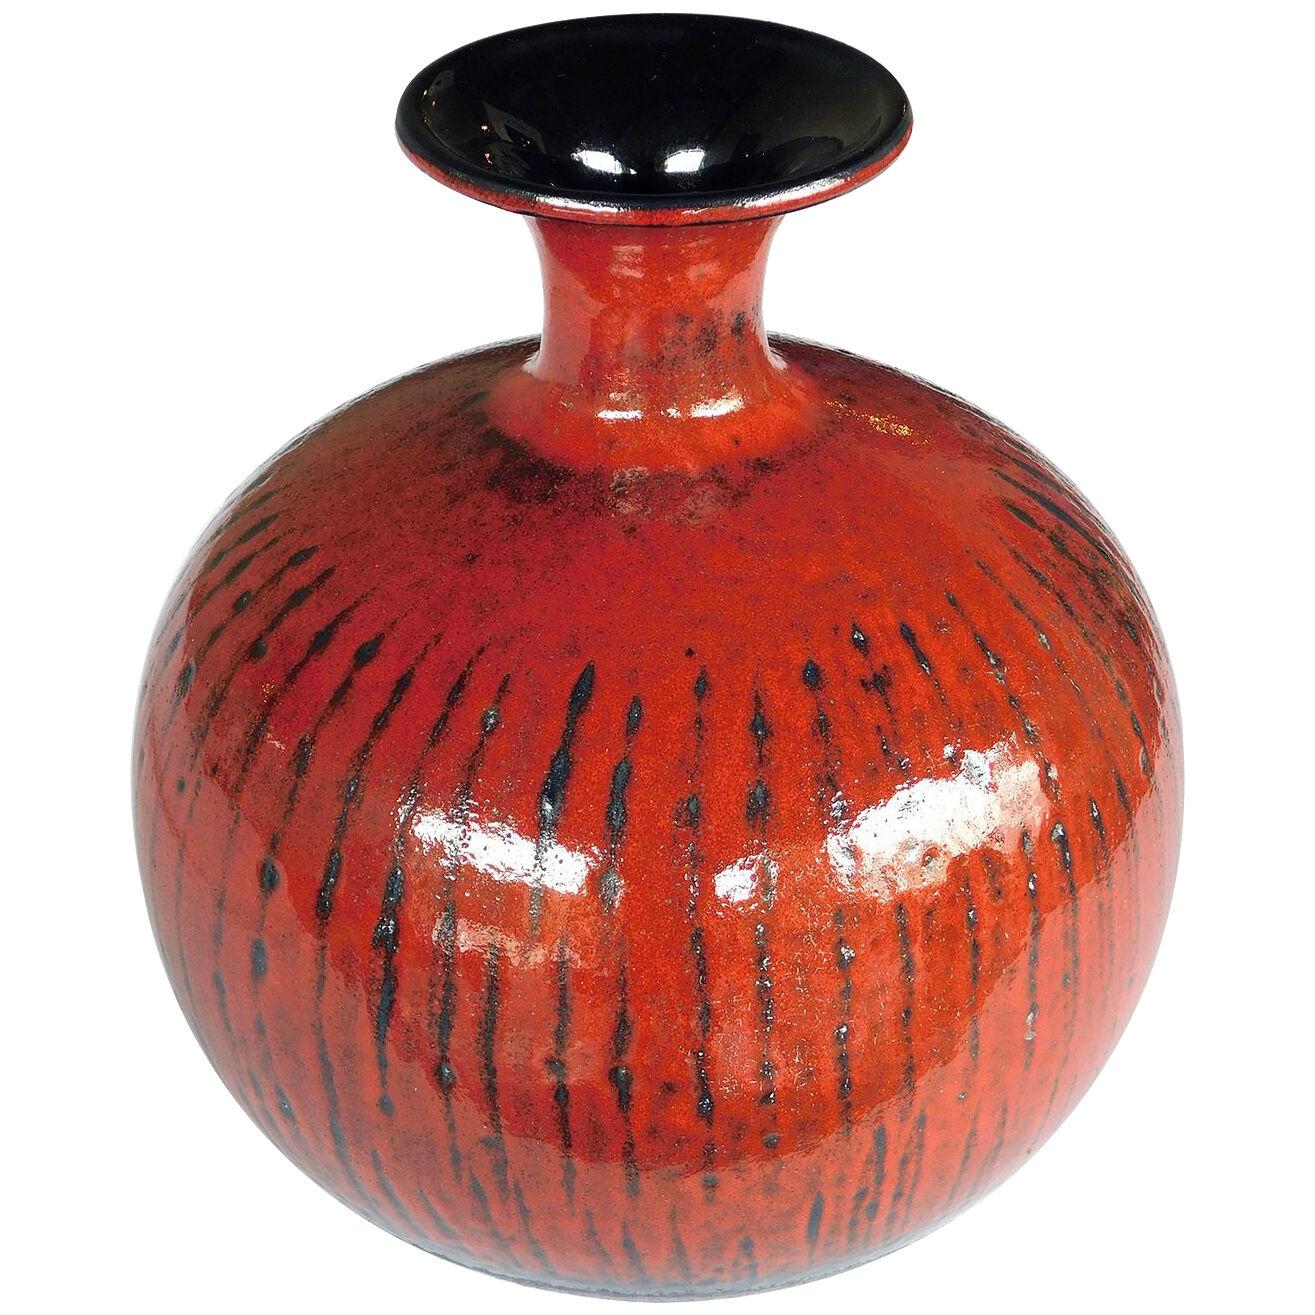 1960's Carstens art pottery red-orange glazed bulbous vase